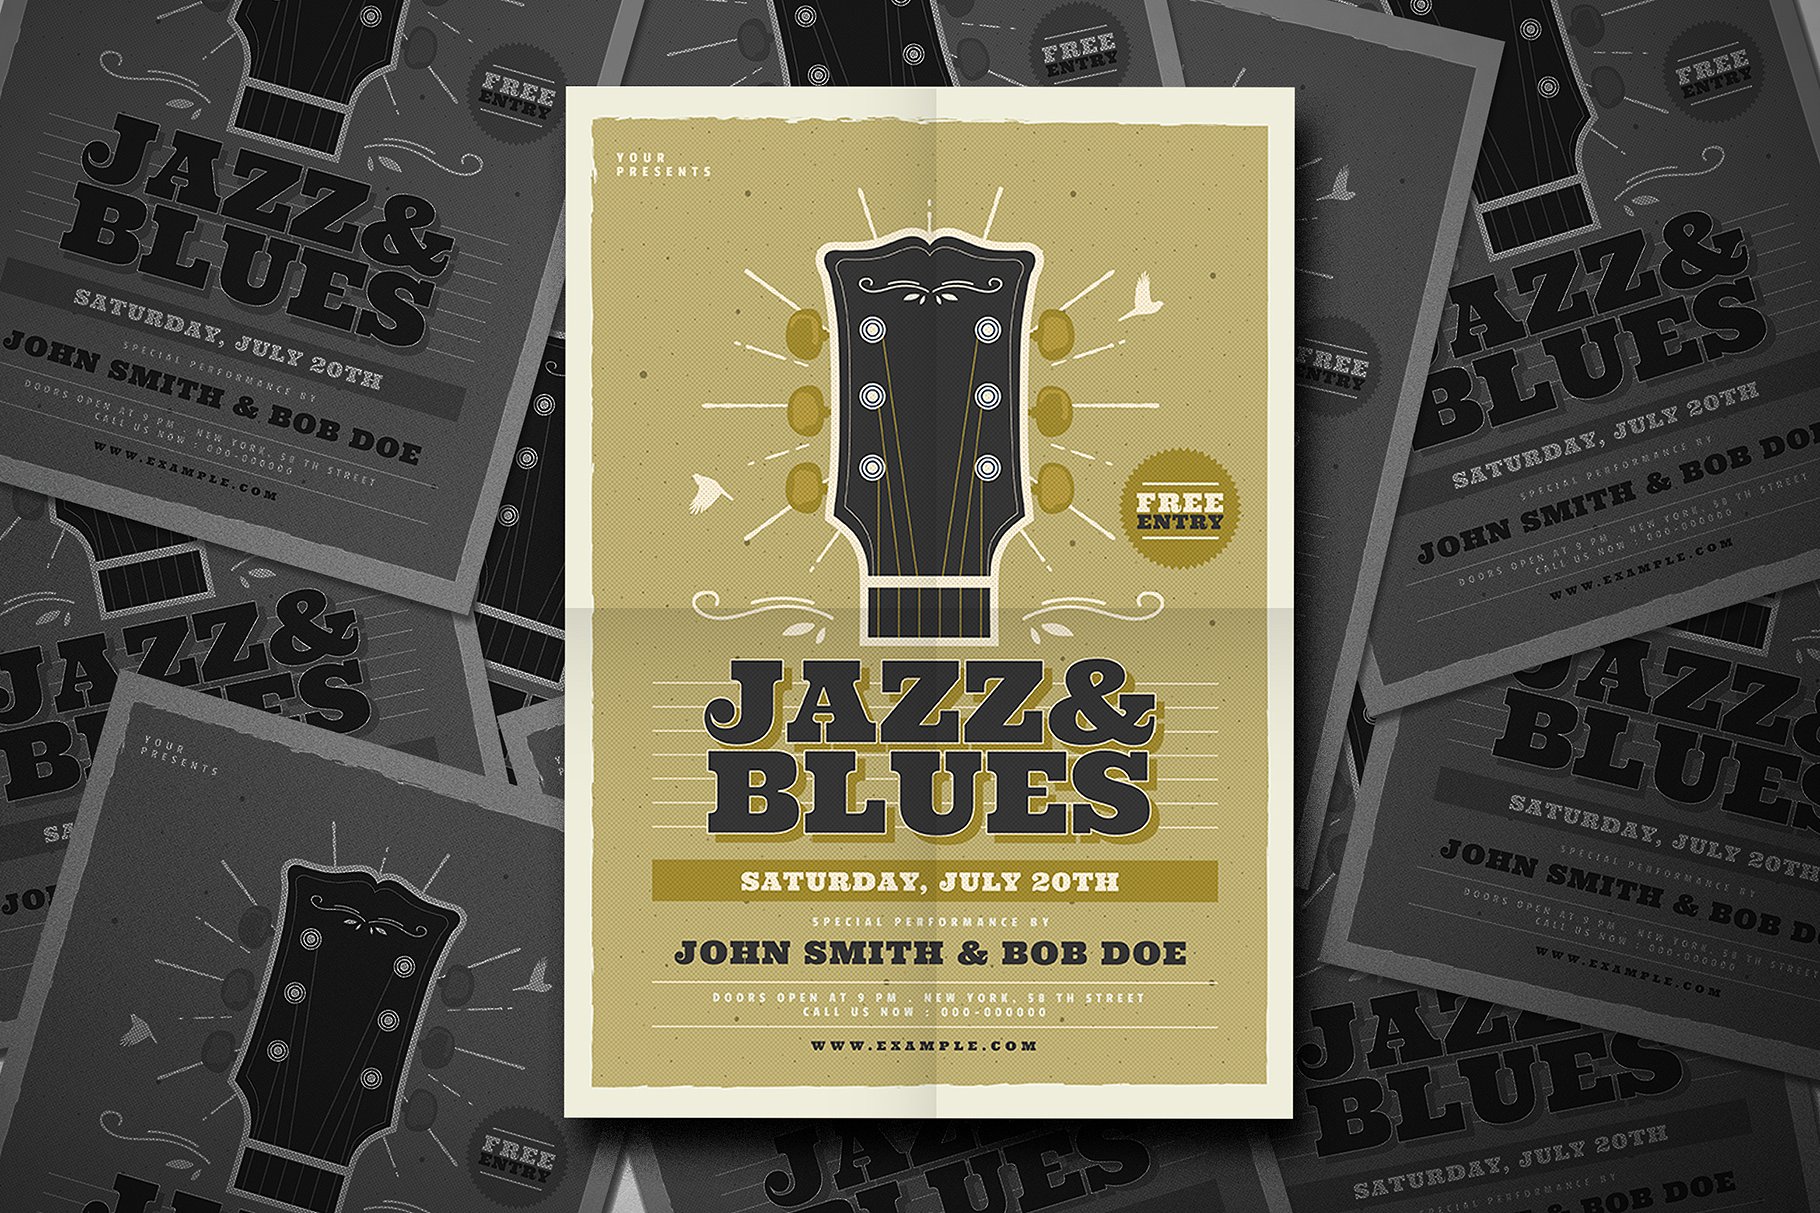 爵士蓝调音乐活动宣传单设计模板 Jazz & Blues Music Flyer插图(2)